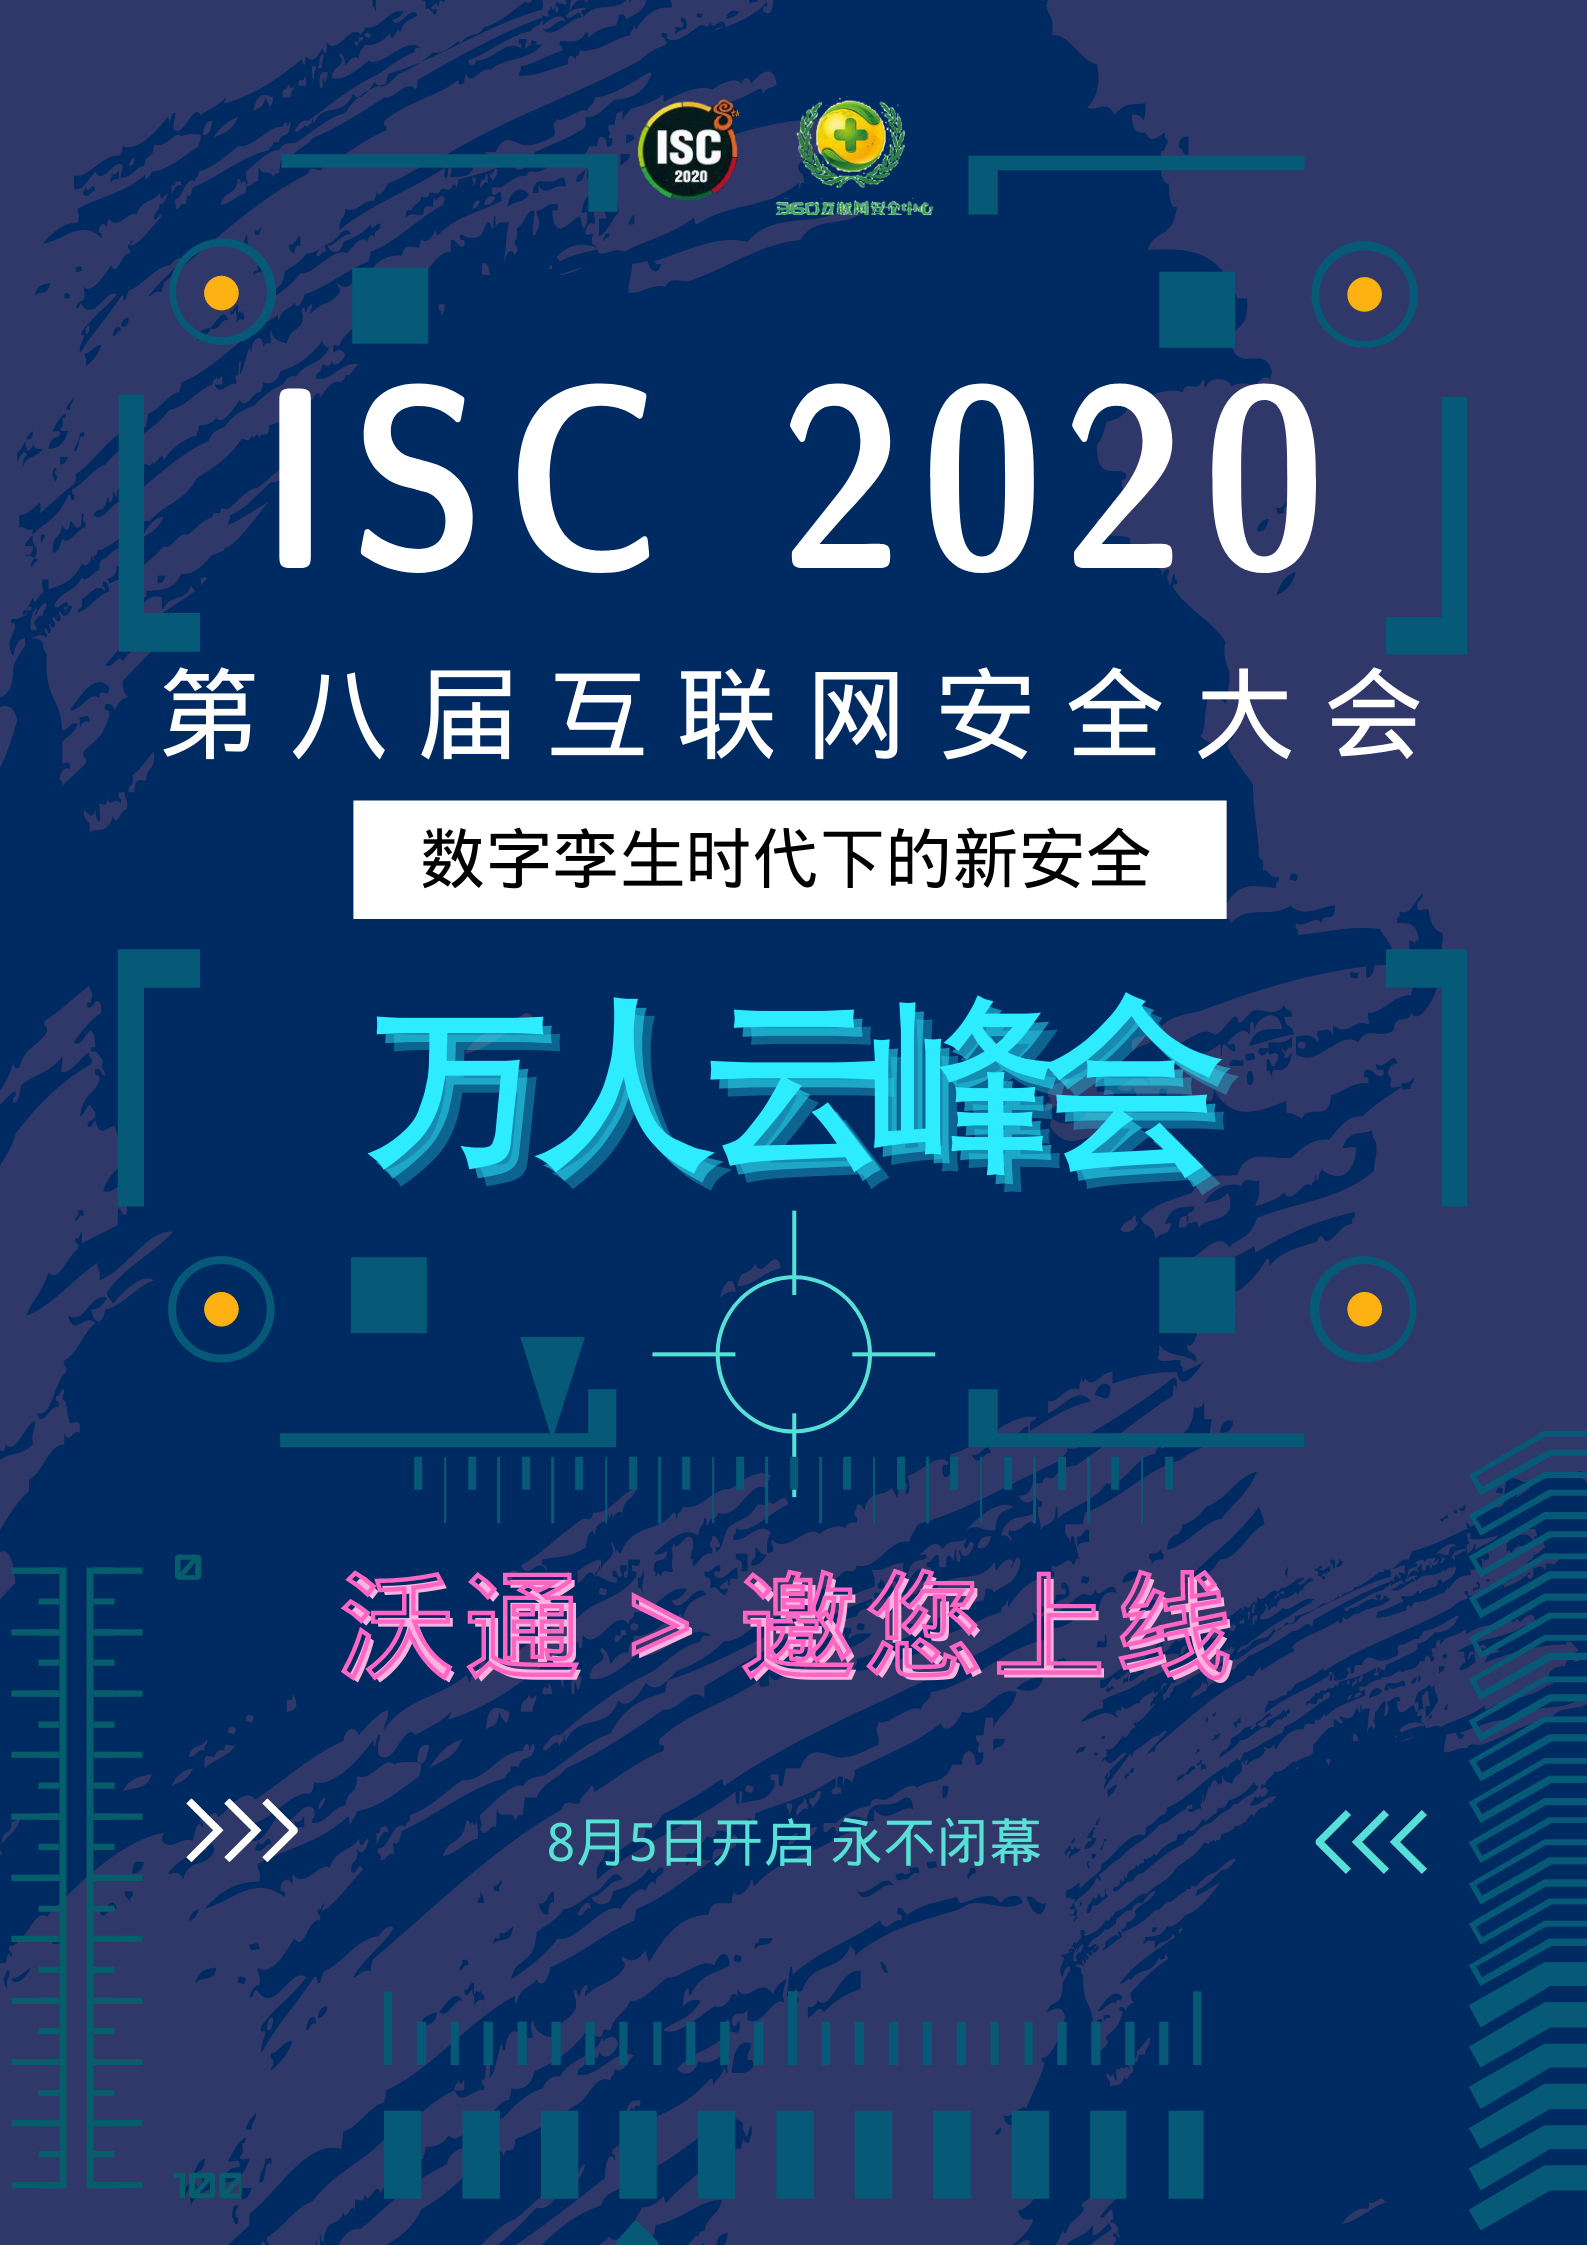 沃通受邀参加2020年ISC 万人云峰会，于8月8日正式上线 第1张